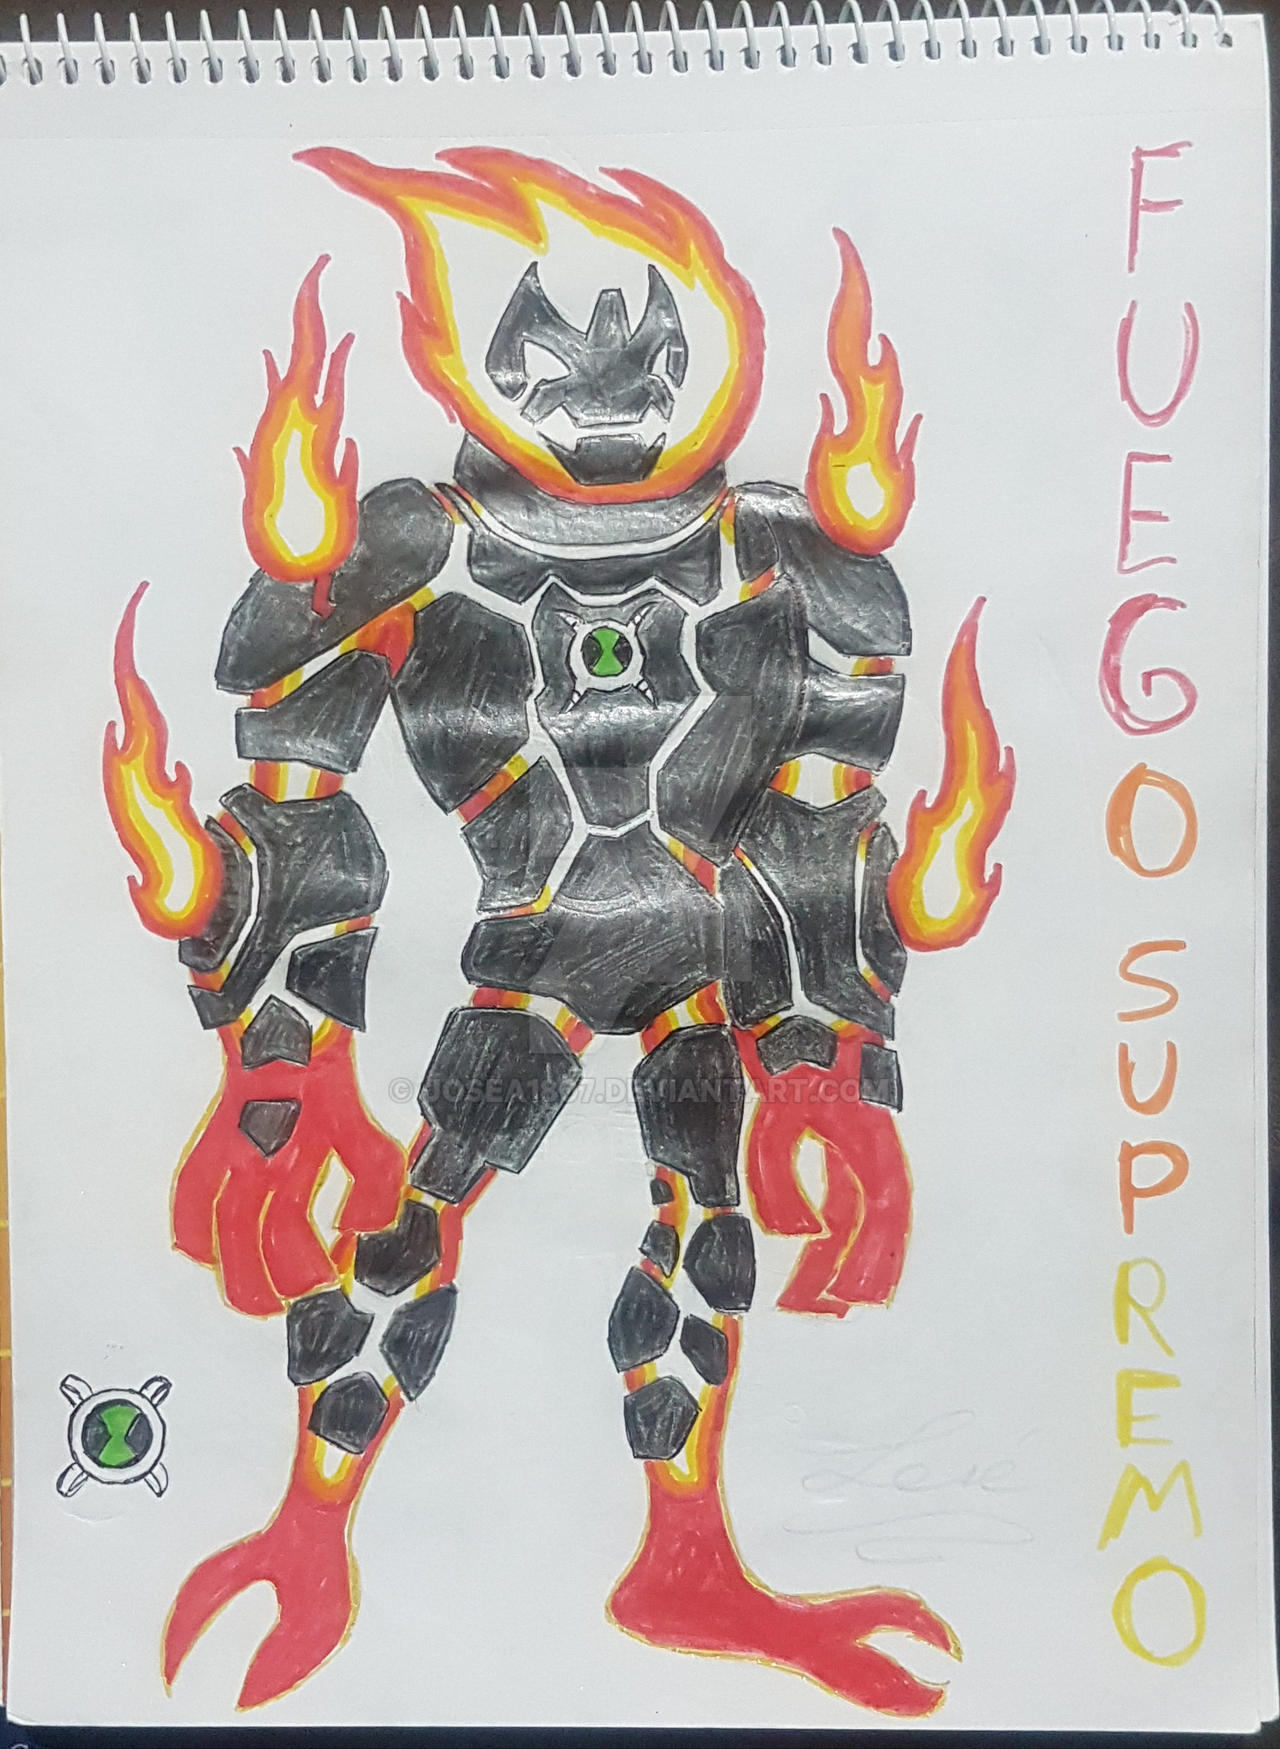 Ben 10 Alien - Fuego Supremo by Crisaurus006 on DeviantArt